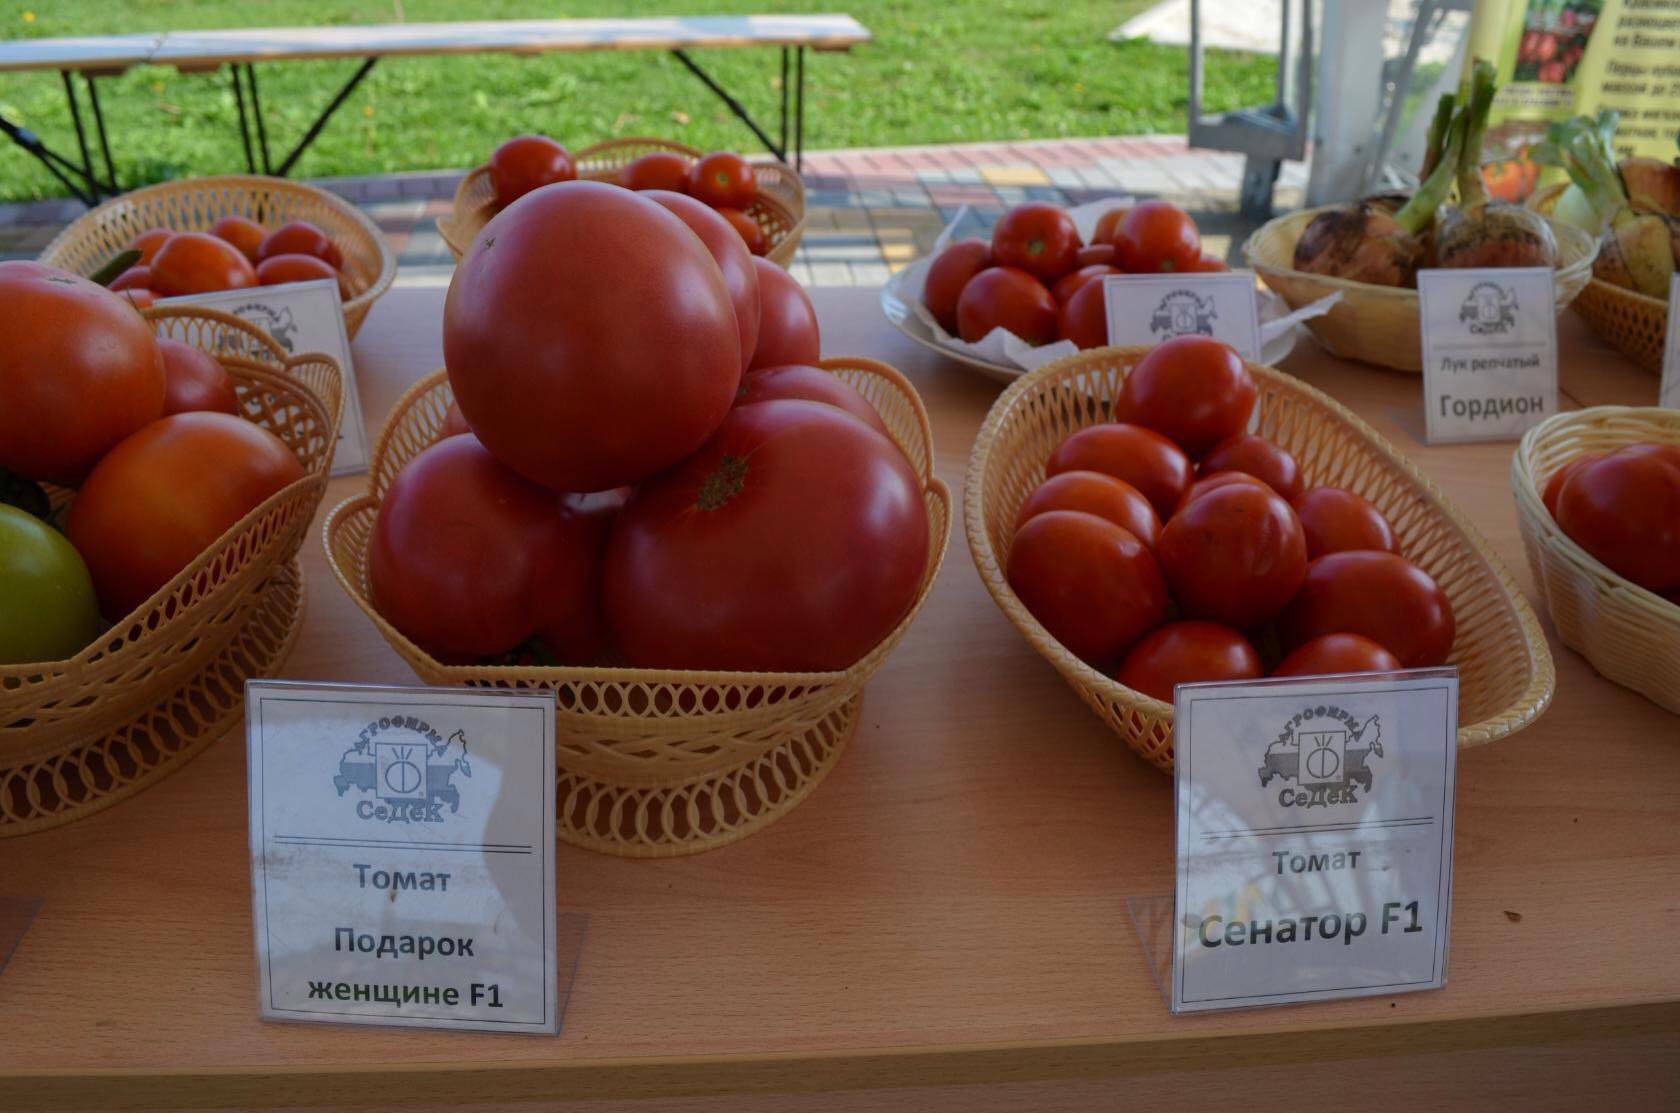 Подарочный: описание сорта томата, характеристики помидоров, посев